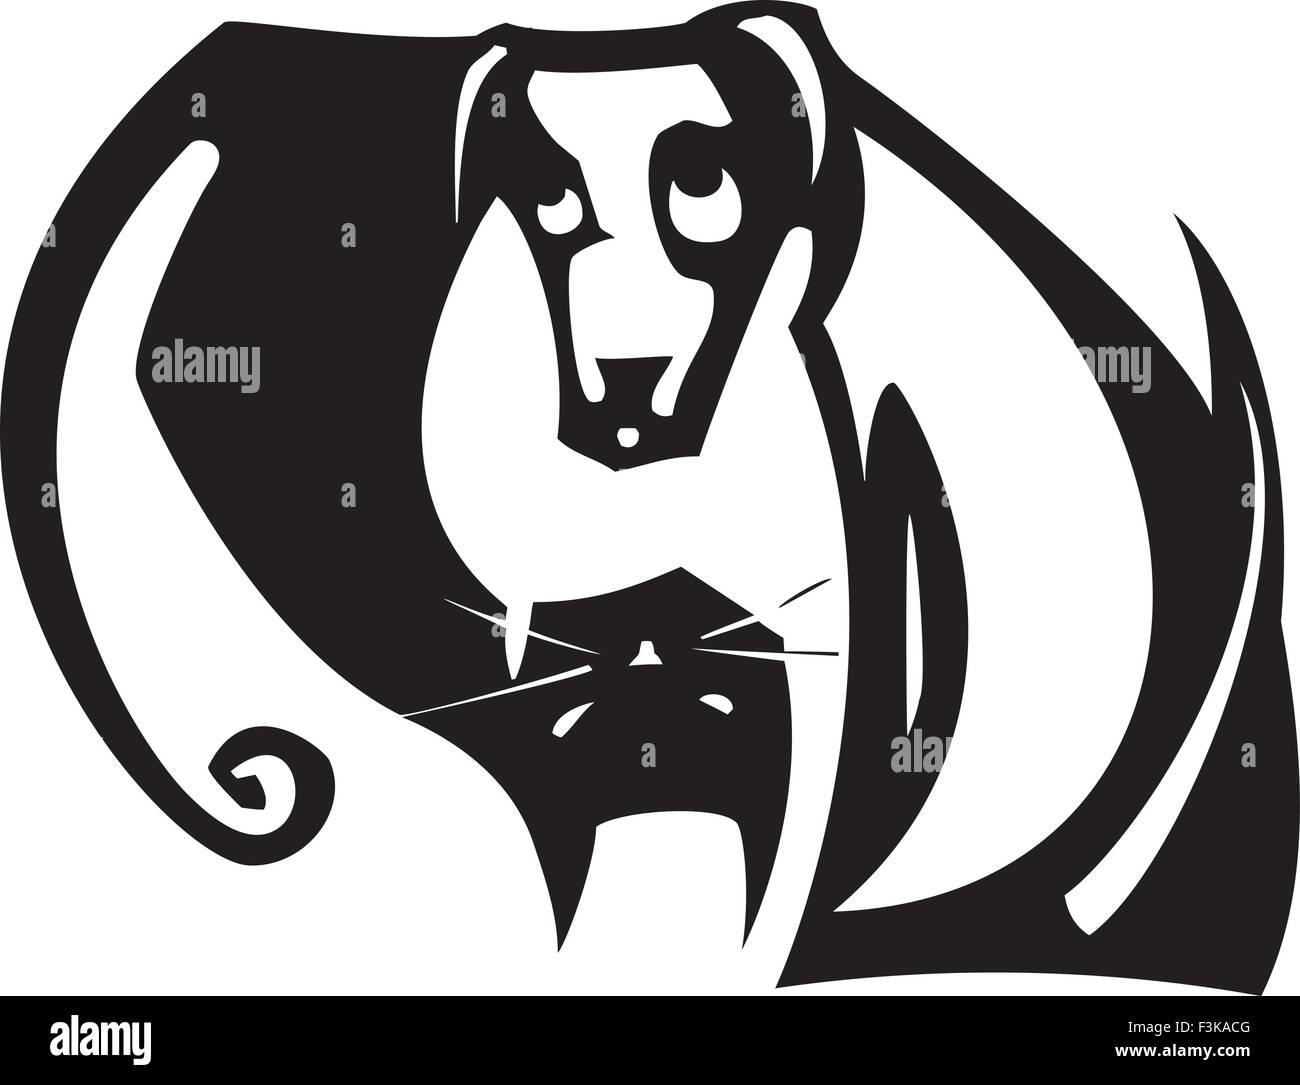 Einfache Yin Yang Gleichgewicht Bild mit einer schwarzen Katze und weißer Hund Stock Vektor